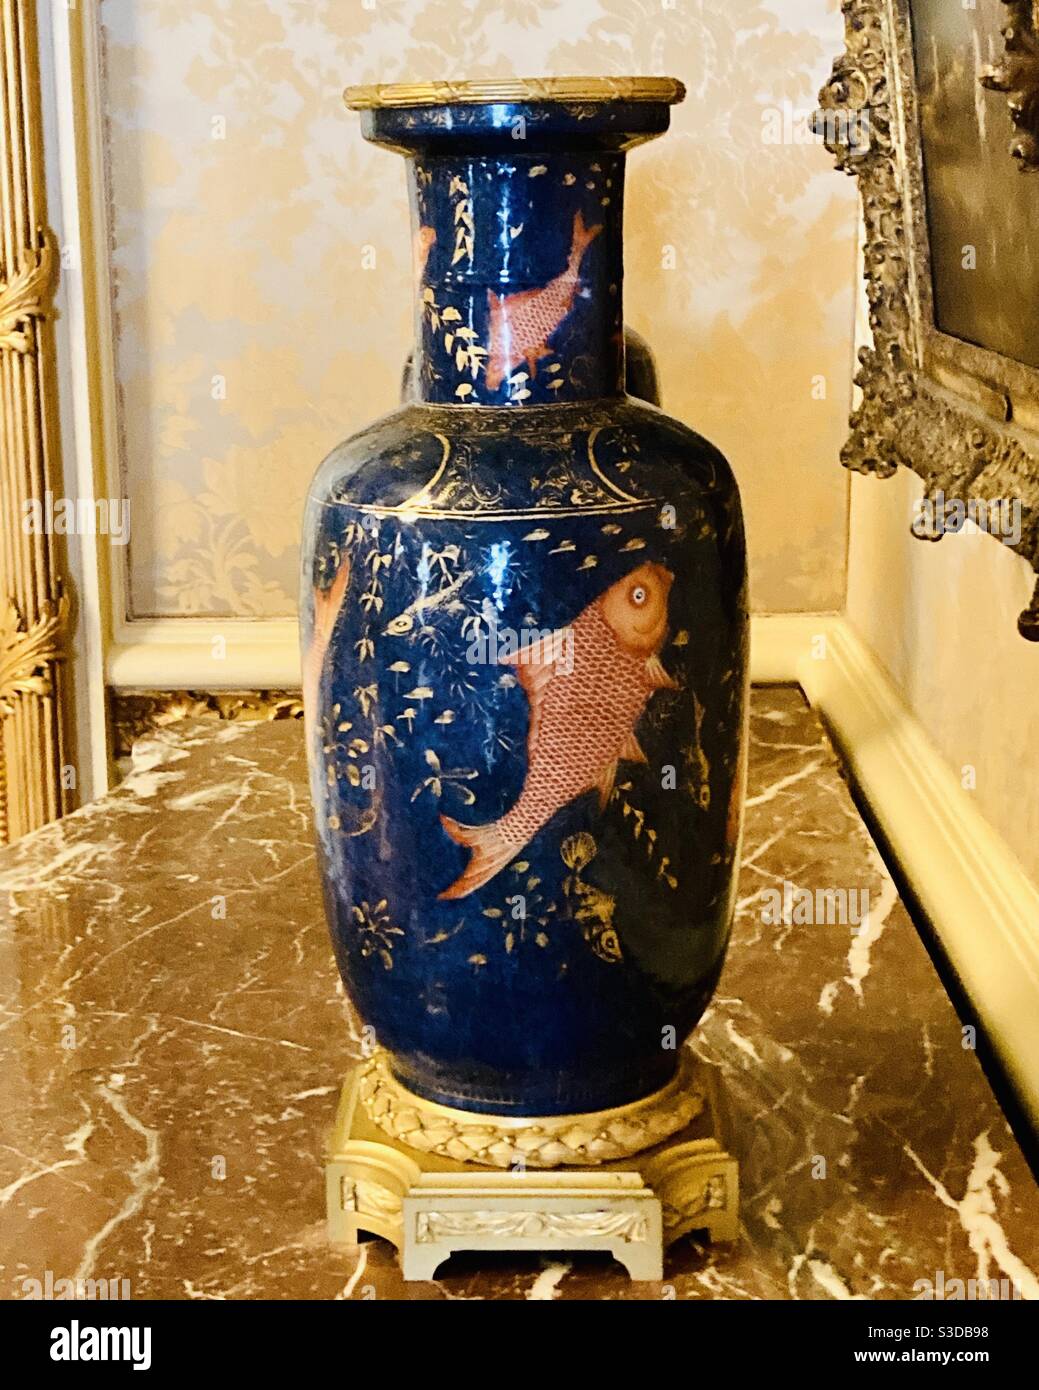 Orientalische Vase sitzt an einem Tisch Vase hat Fisch Zeichnung  Stockfotografie - Alamy